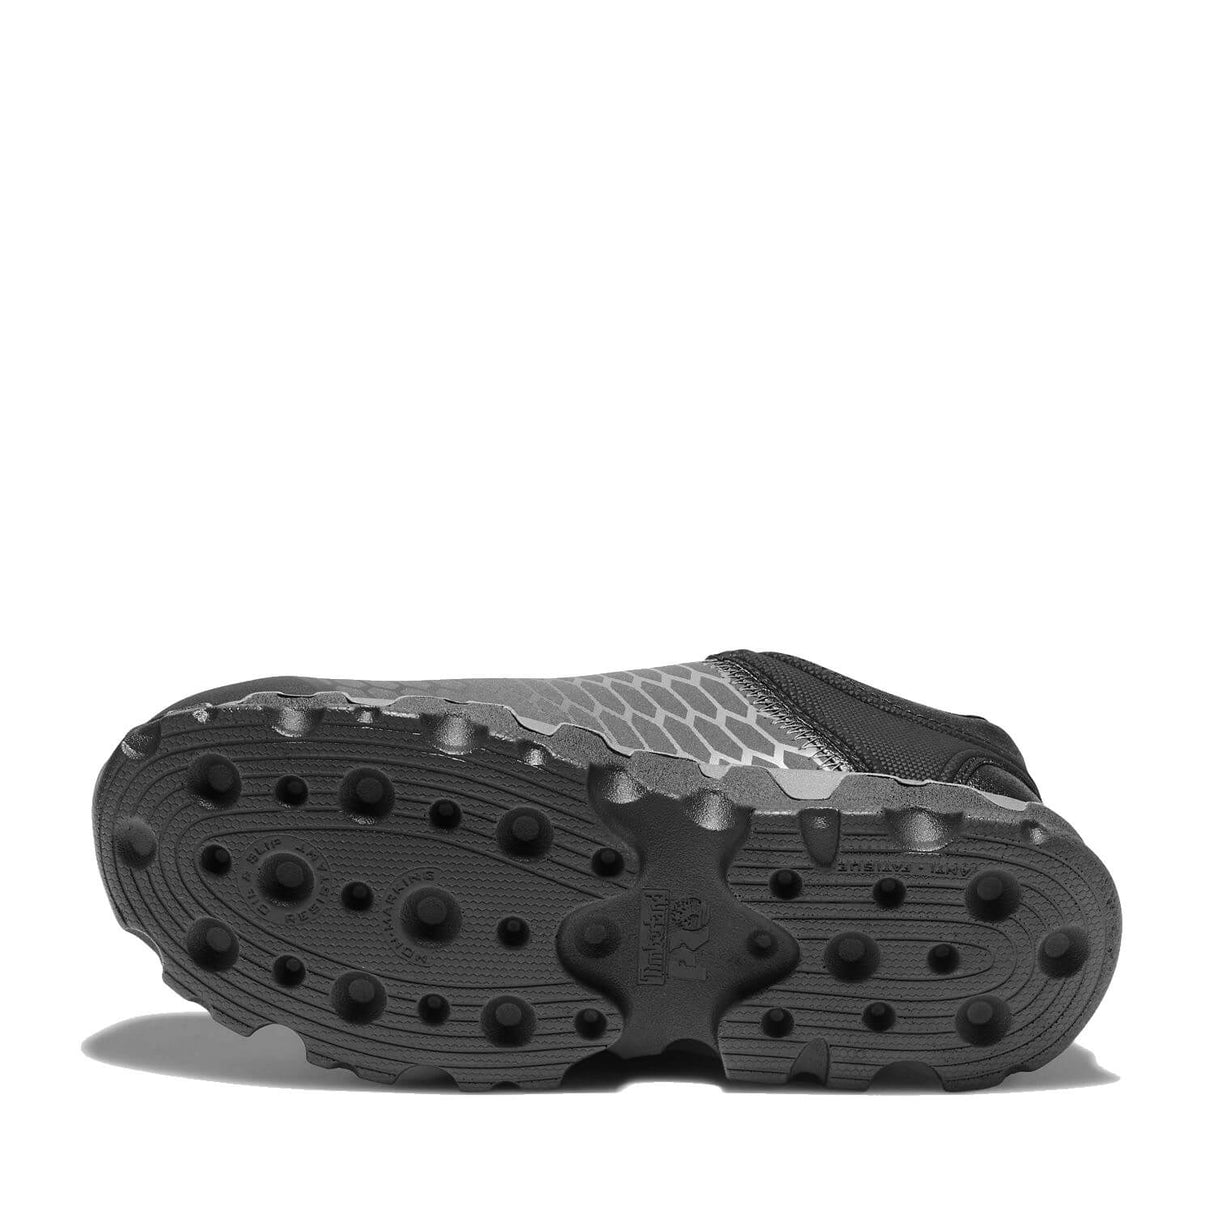 Timberland PRO-Powertrain Sport Men's Alloy-Toe Shoe Black/Grey-Steel Toes-3